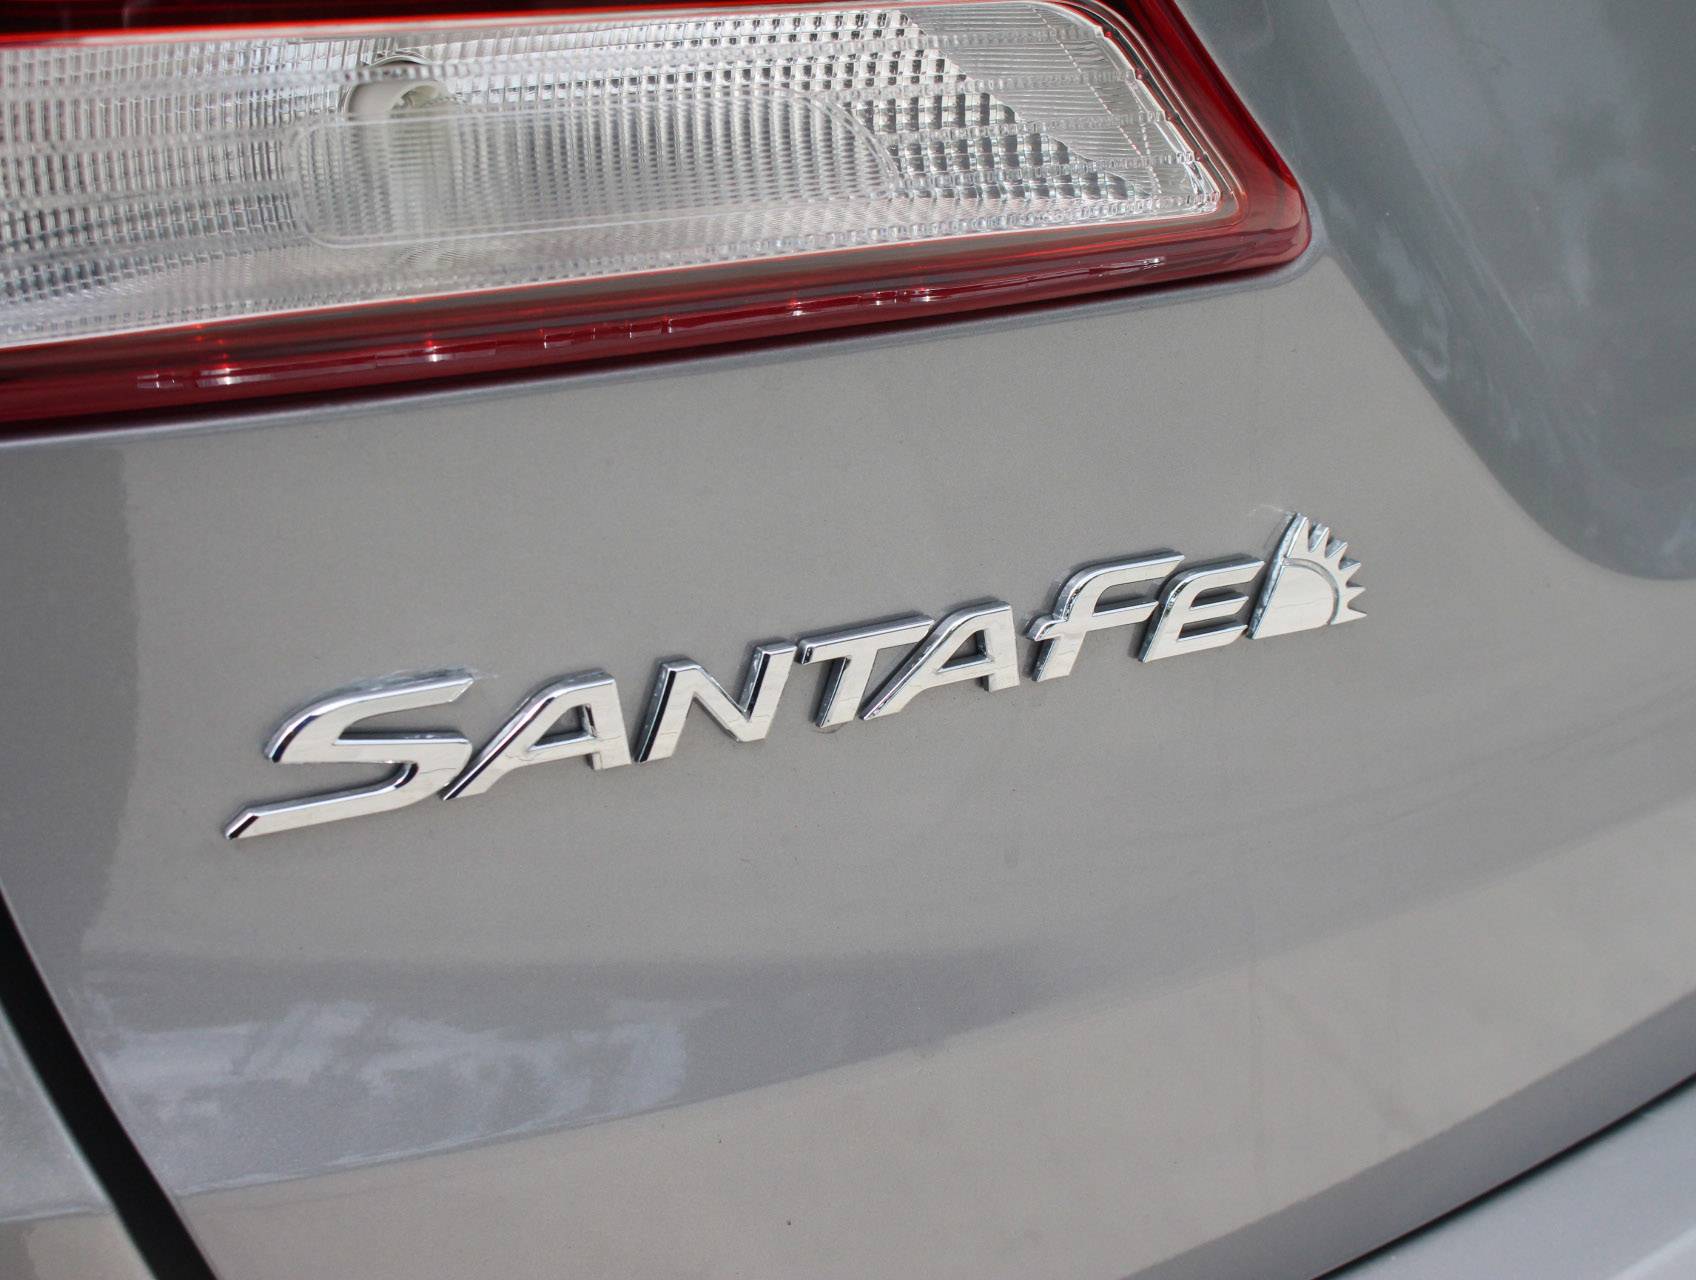 Florida Fine Cars - Used HYUNDAI SANTA FE 2017 MARGATE Limited Ultimate